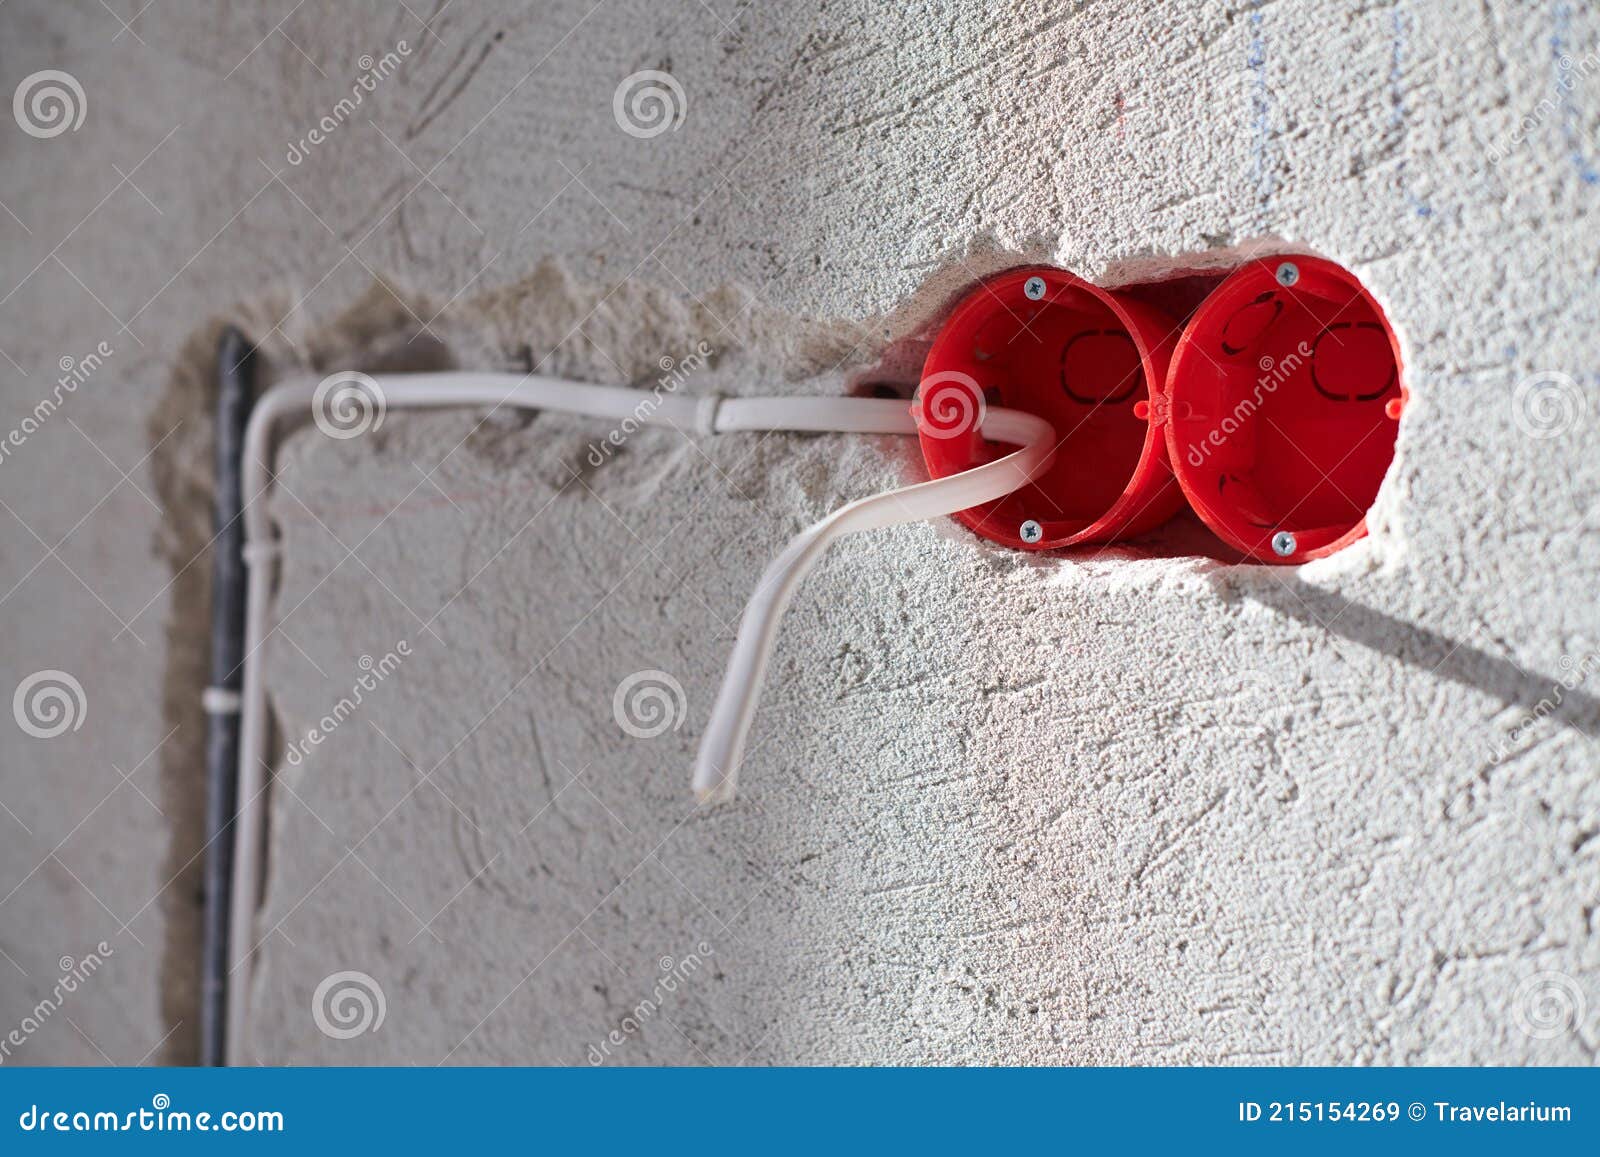 Caja De Enchufe De Plástico Y Cables Eléctricos En La Pared De Yeso Imagen  de archivo - Imagen de rojo, industria: 215154269